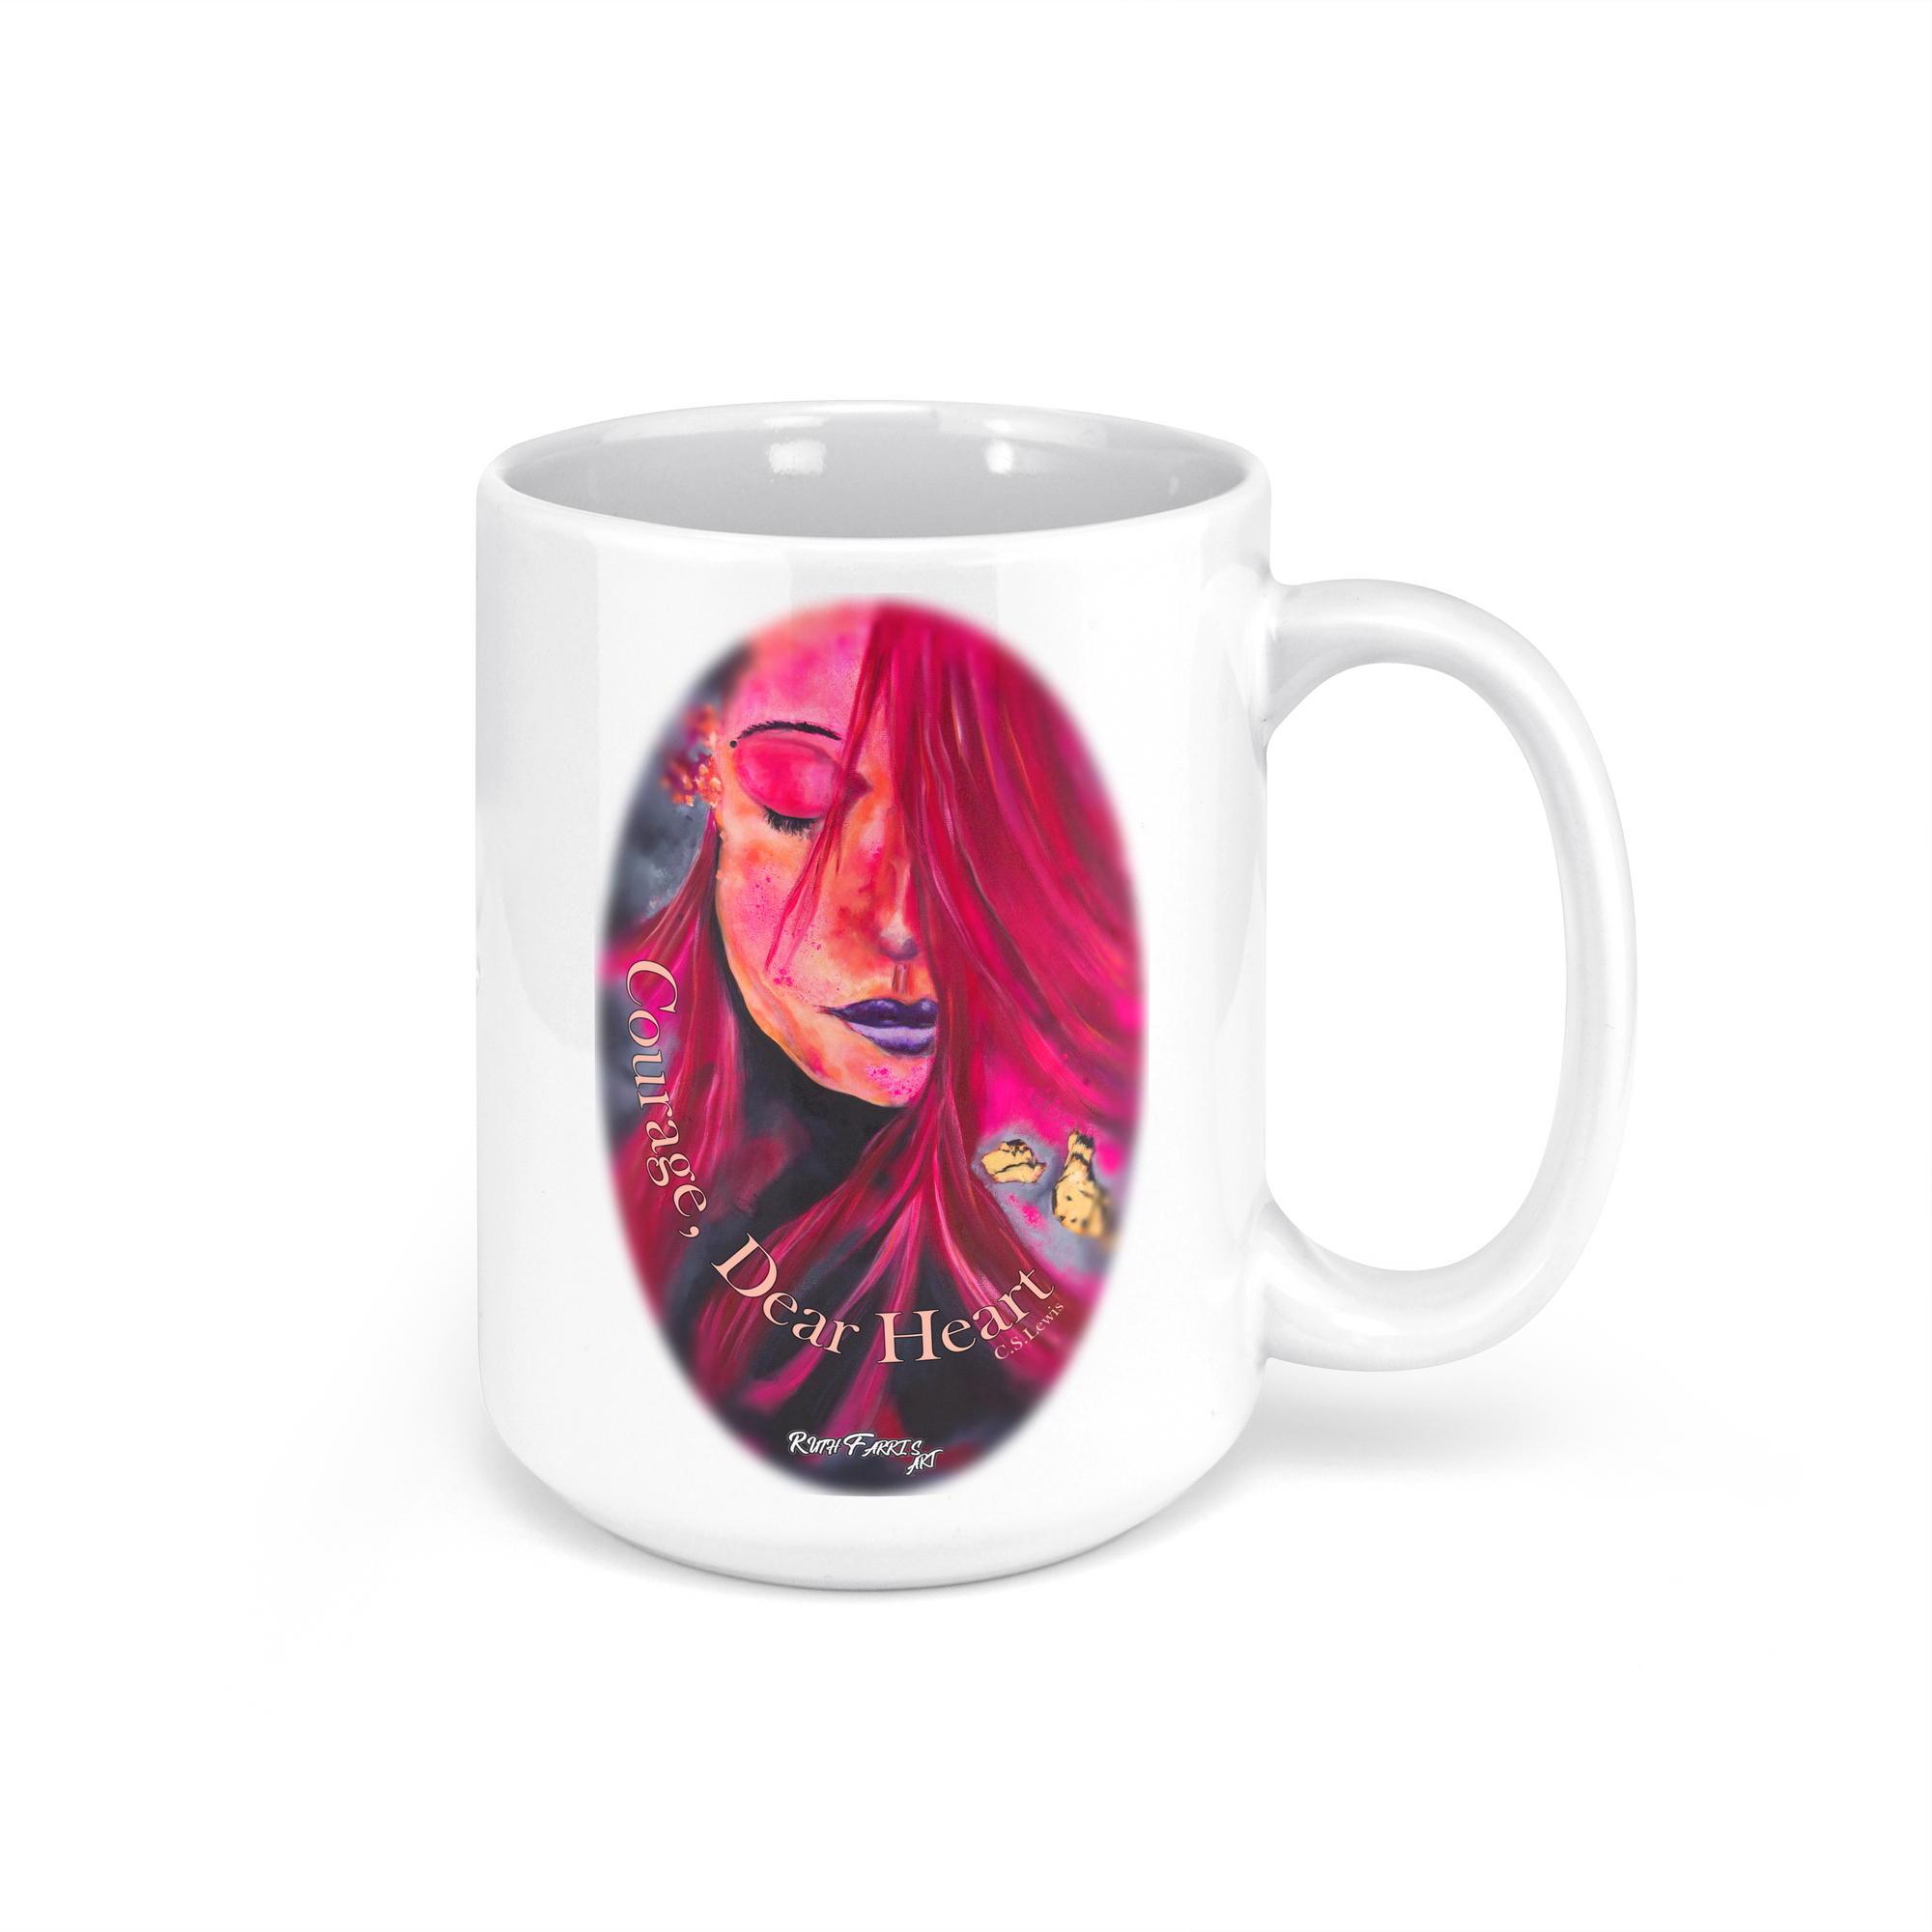 "Sunset Woman" - 15oz Coffee Mug